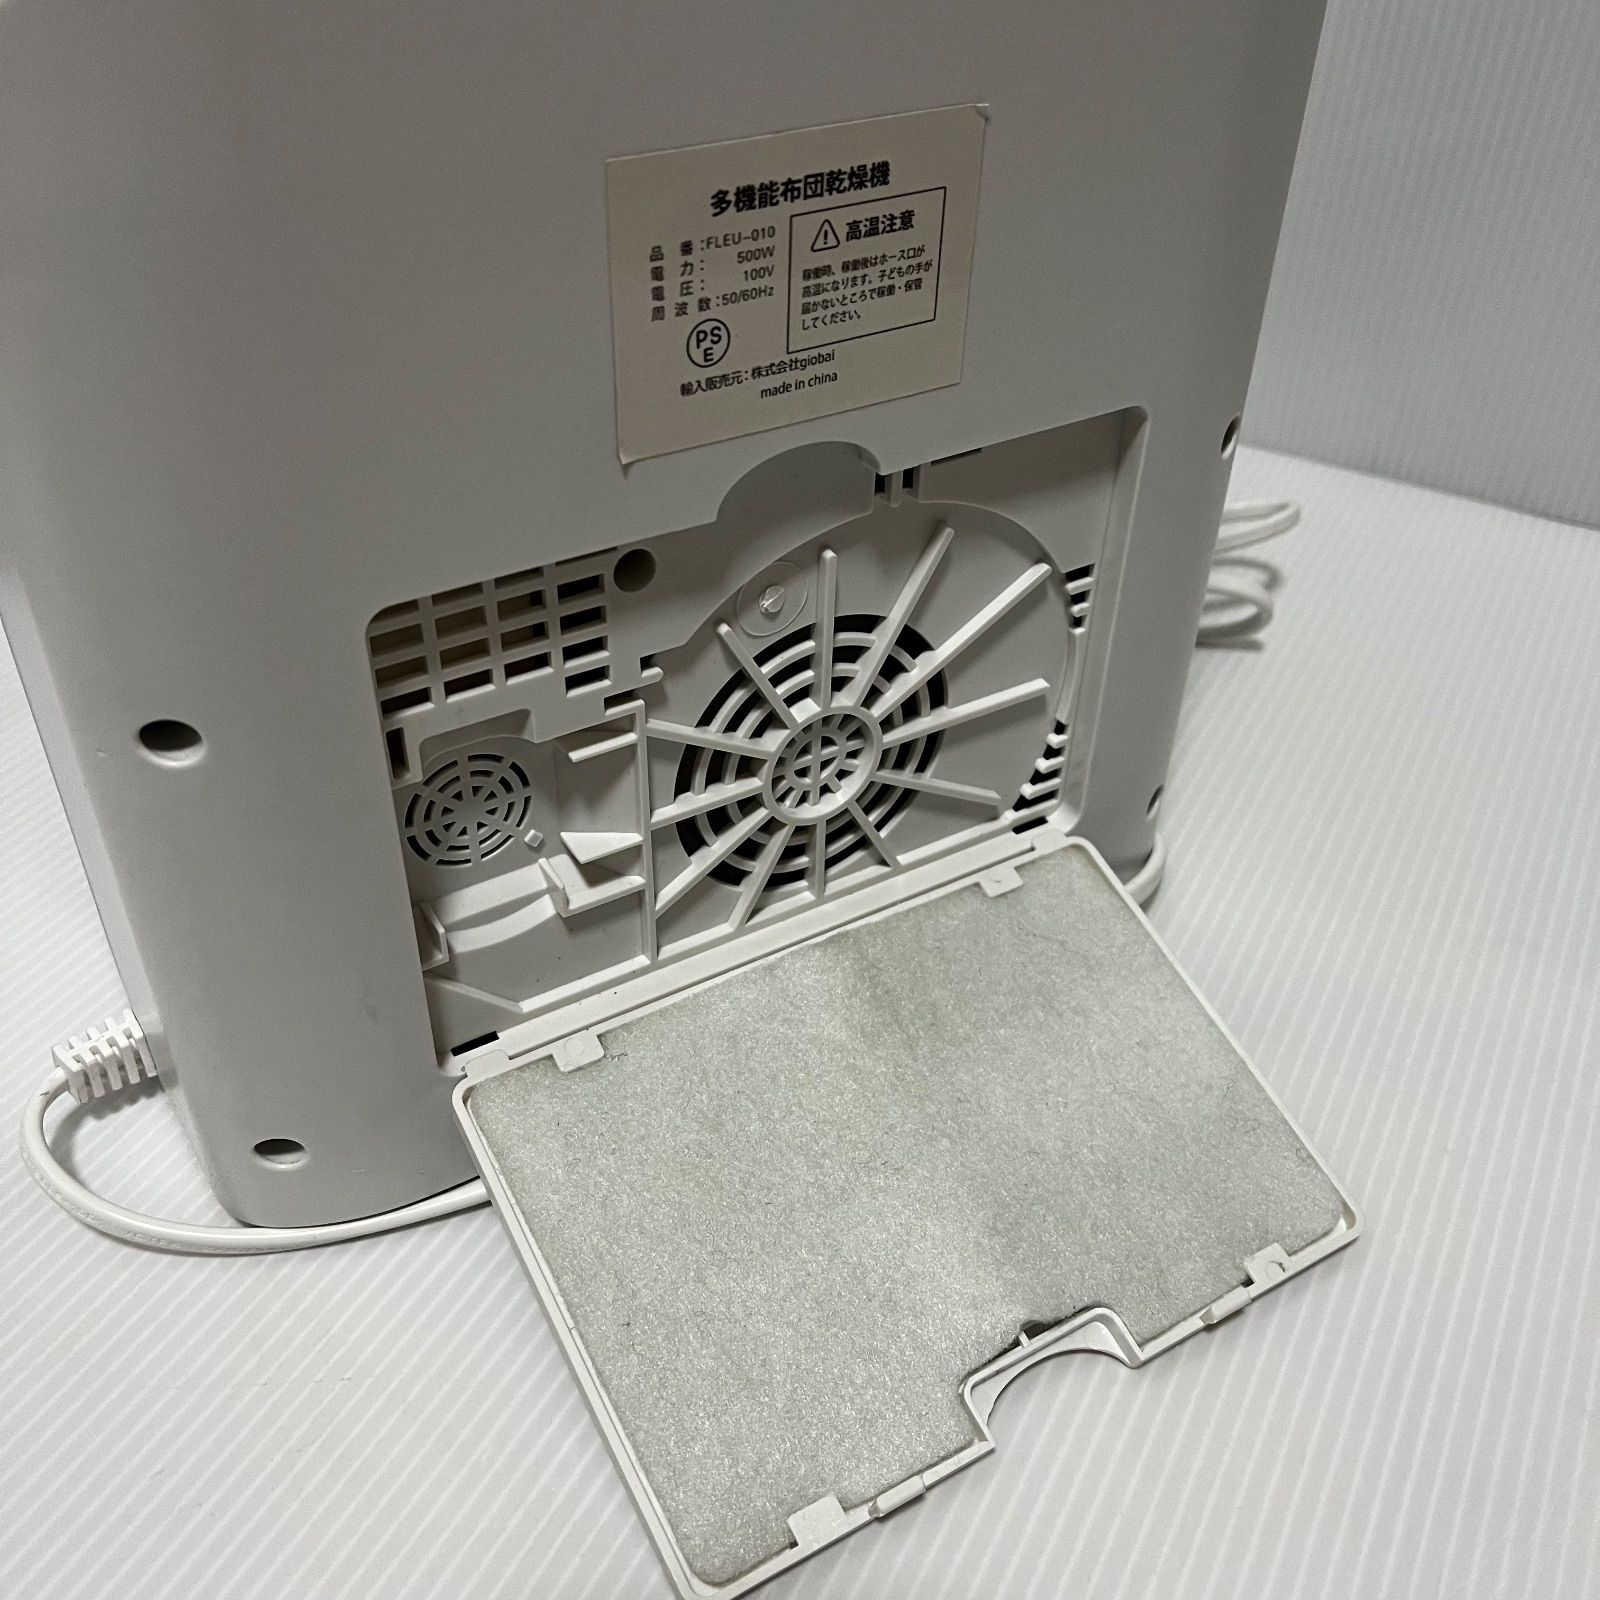 フルリスト FLEURISTE 布団乾燥機(アロマ機能付き) - 除湿機・乾燥機